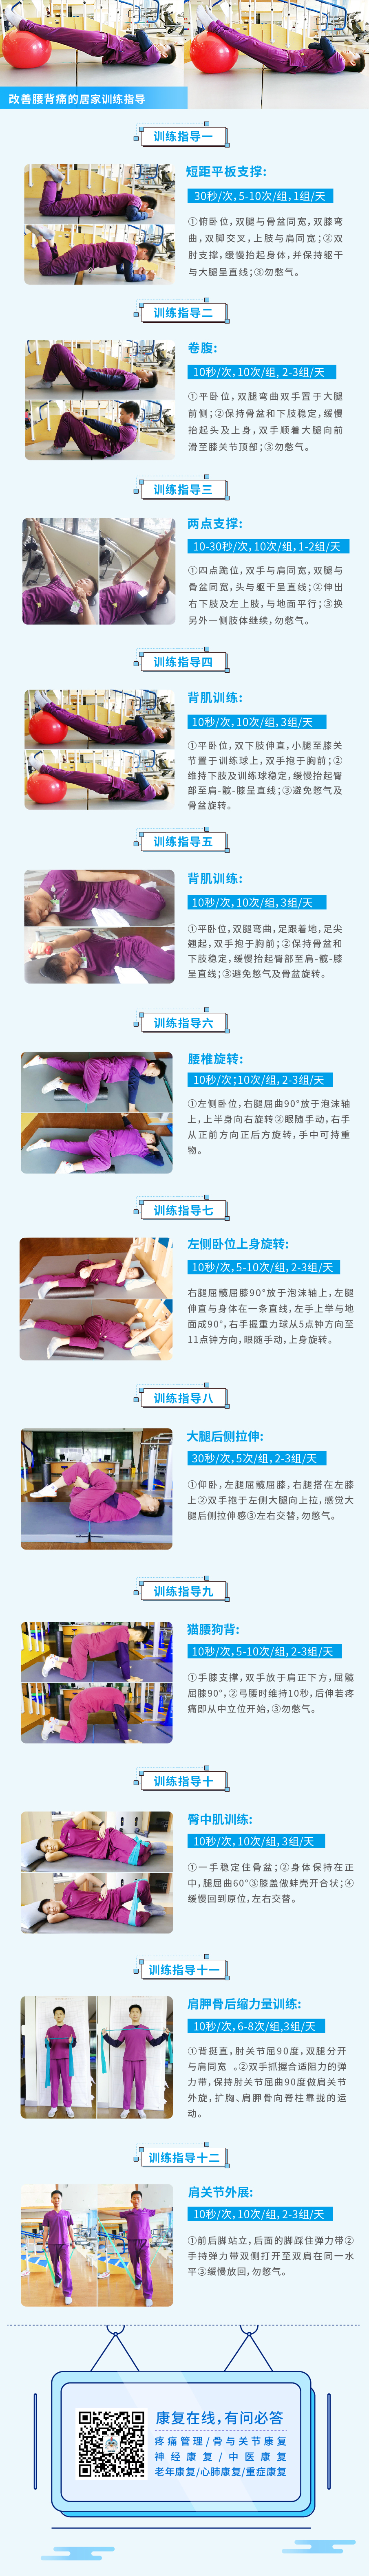 改腰背痛的居家训练指导_画板 1.jpg